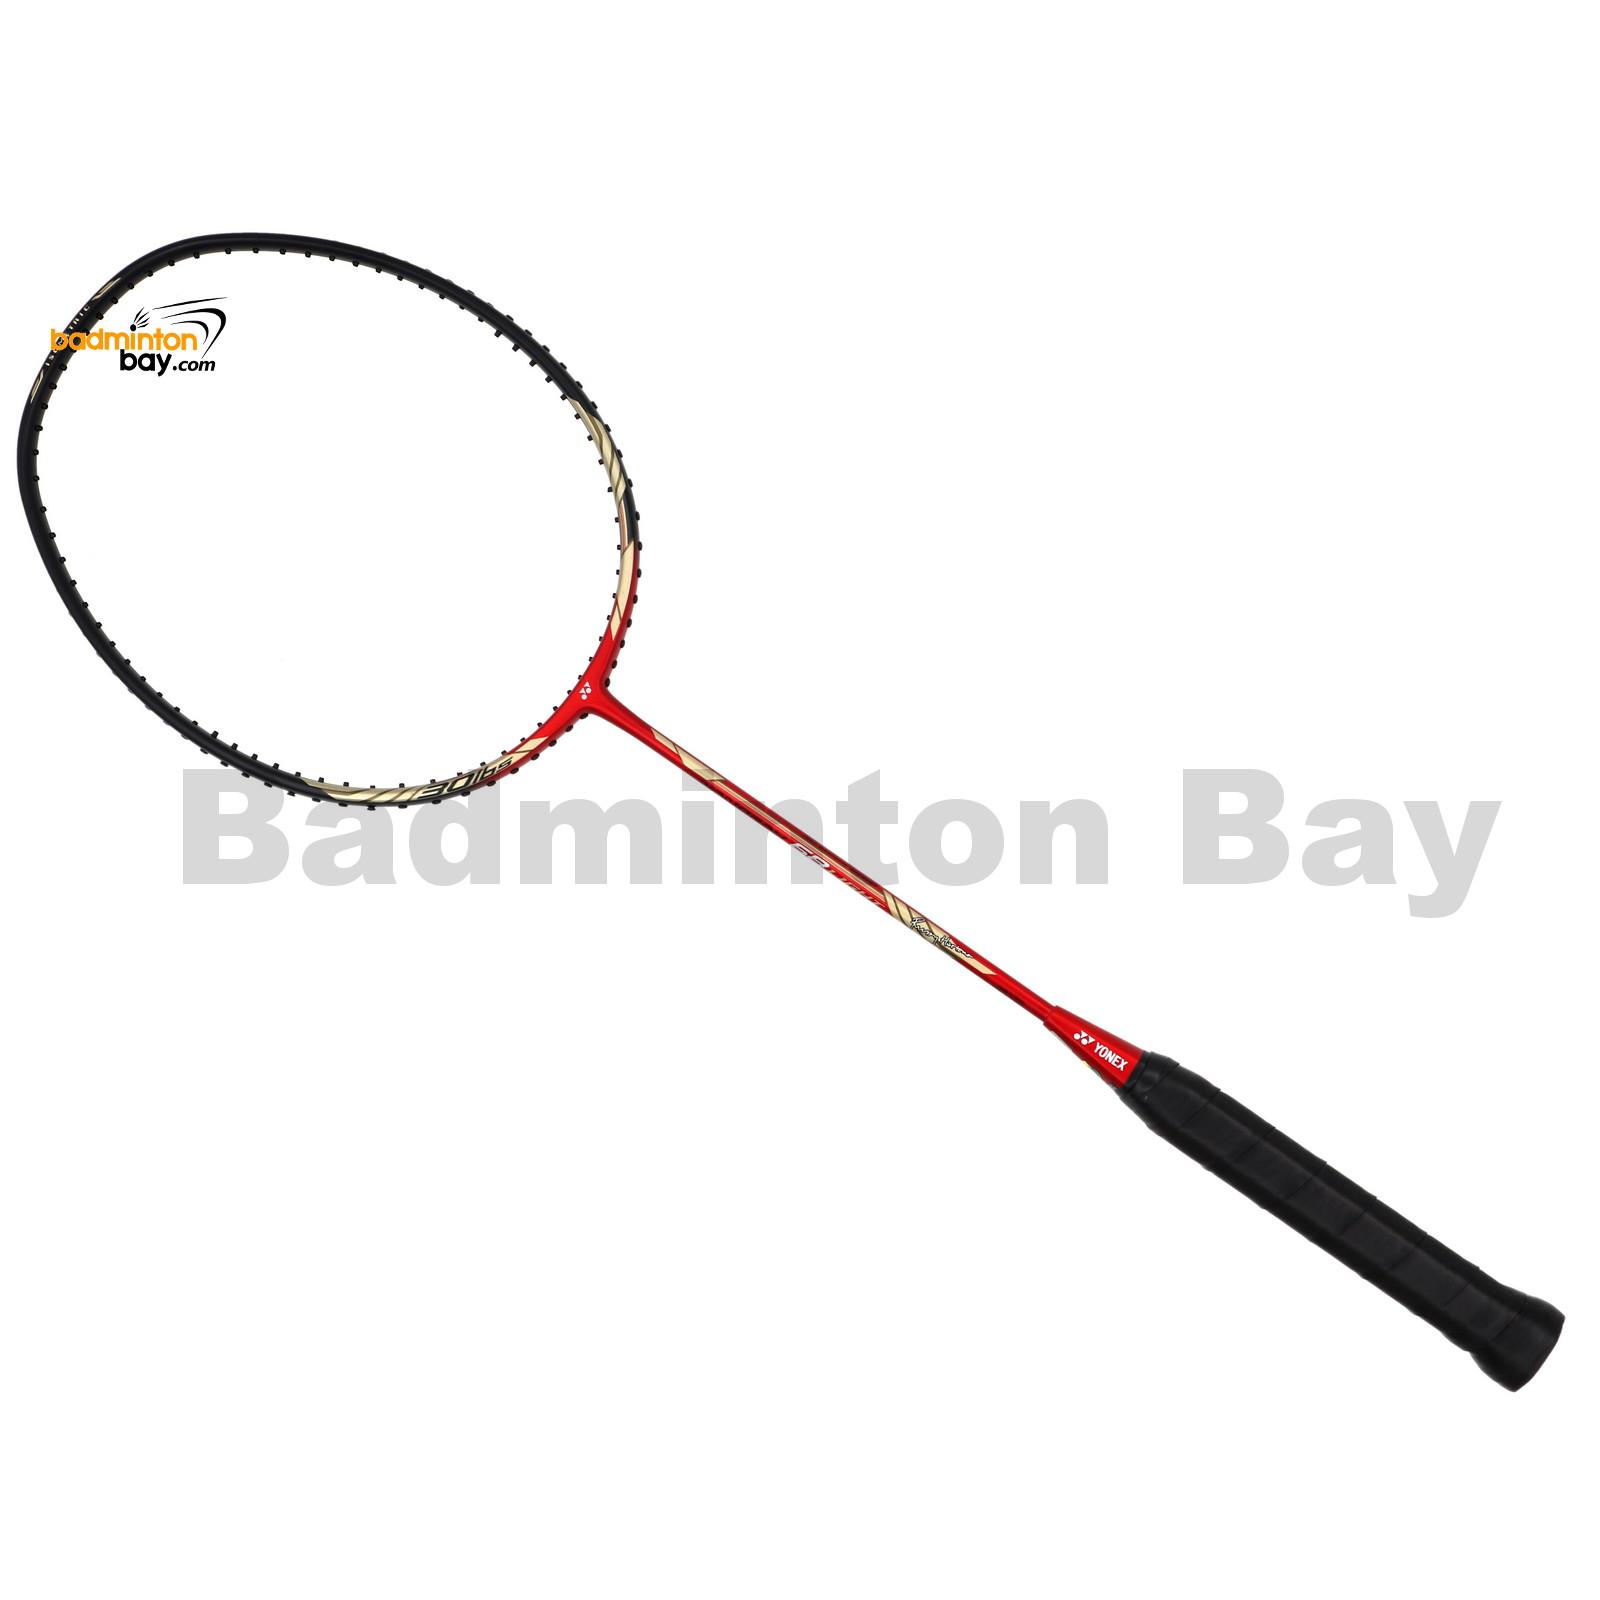 Nanoray 68 Light Rudy Hartono Series NR-68LITE Black Red Badminton Racket YONEX 5U-G5 